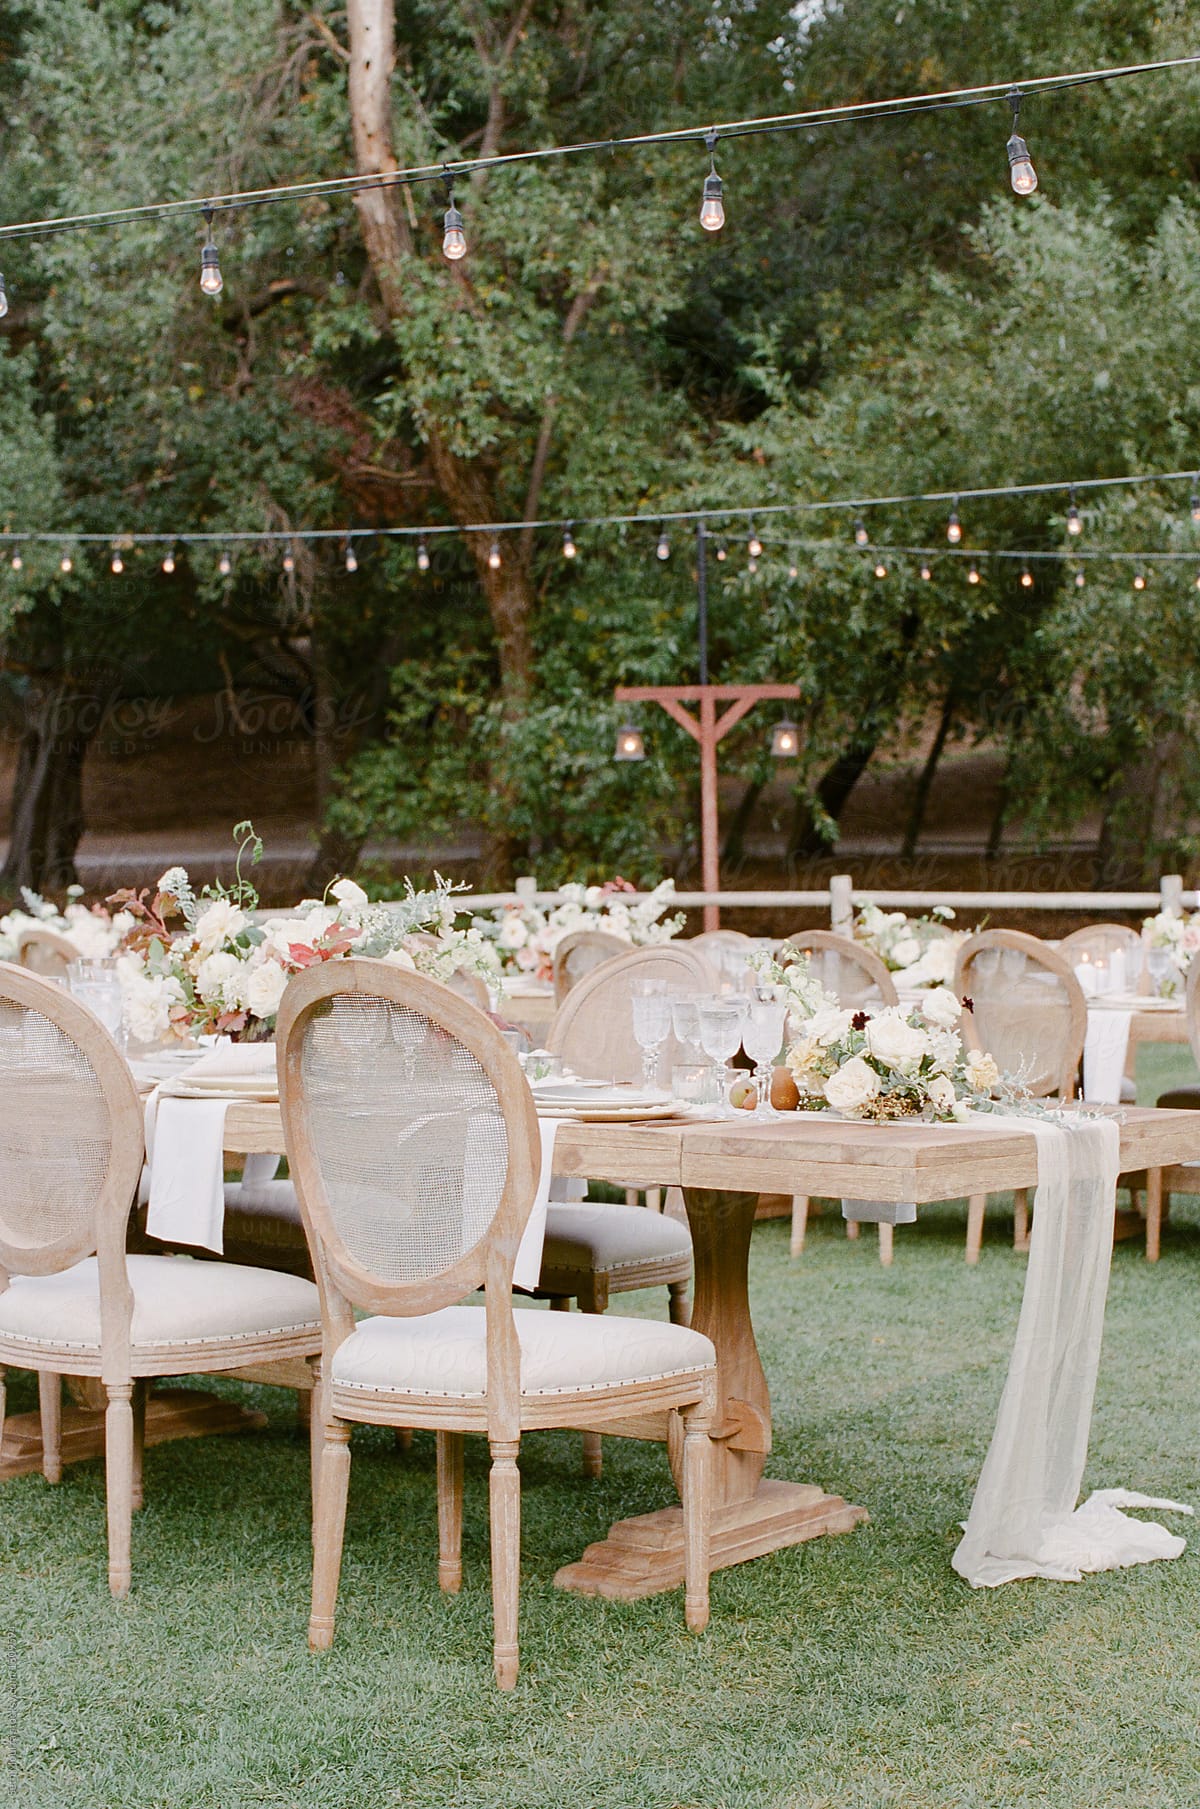 Rustic outdoor wedding reception table